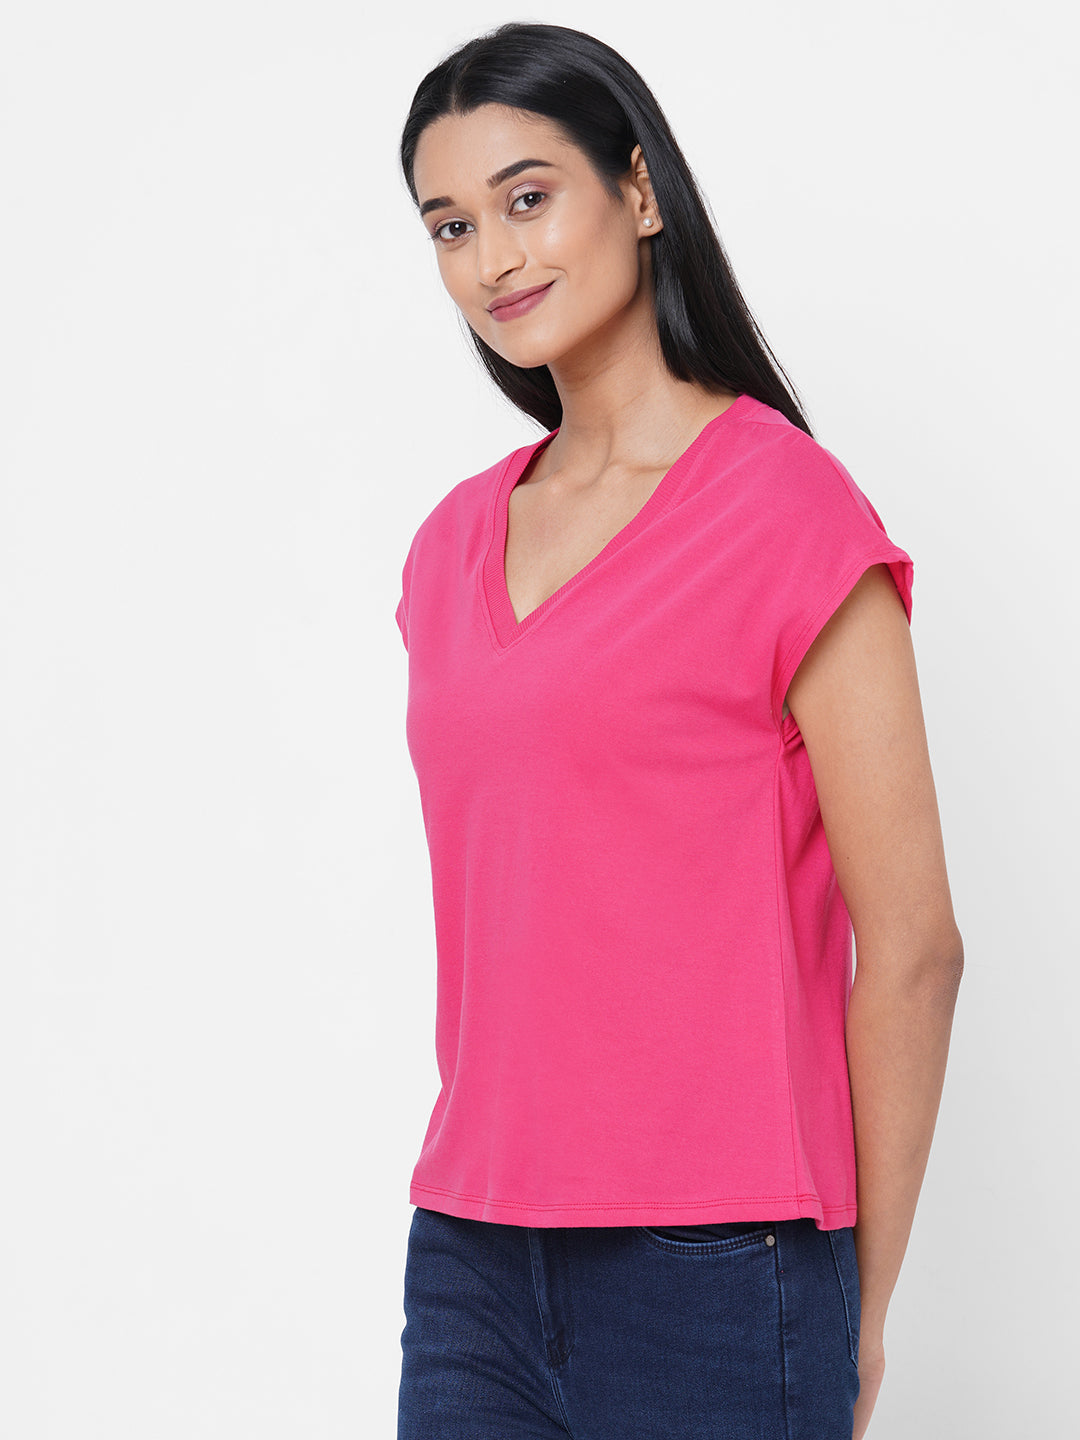 Womens Cotton Deep Pink Slim Fit Tshirt